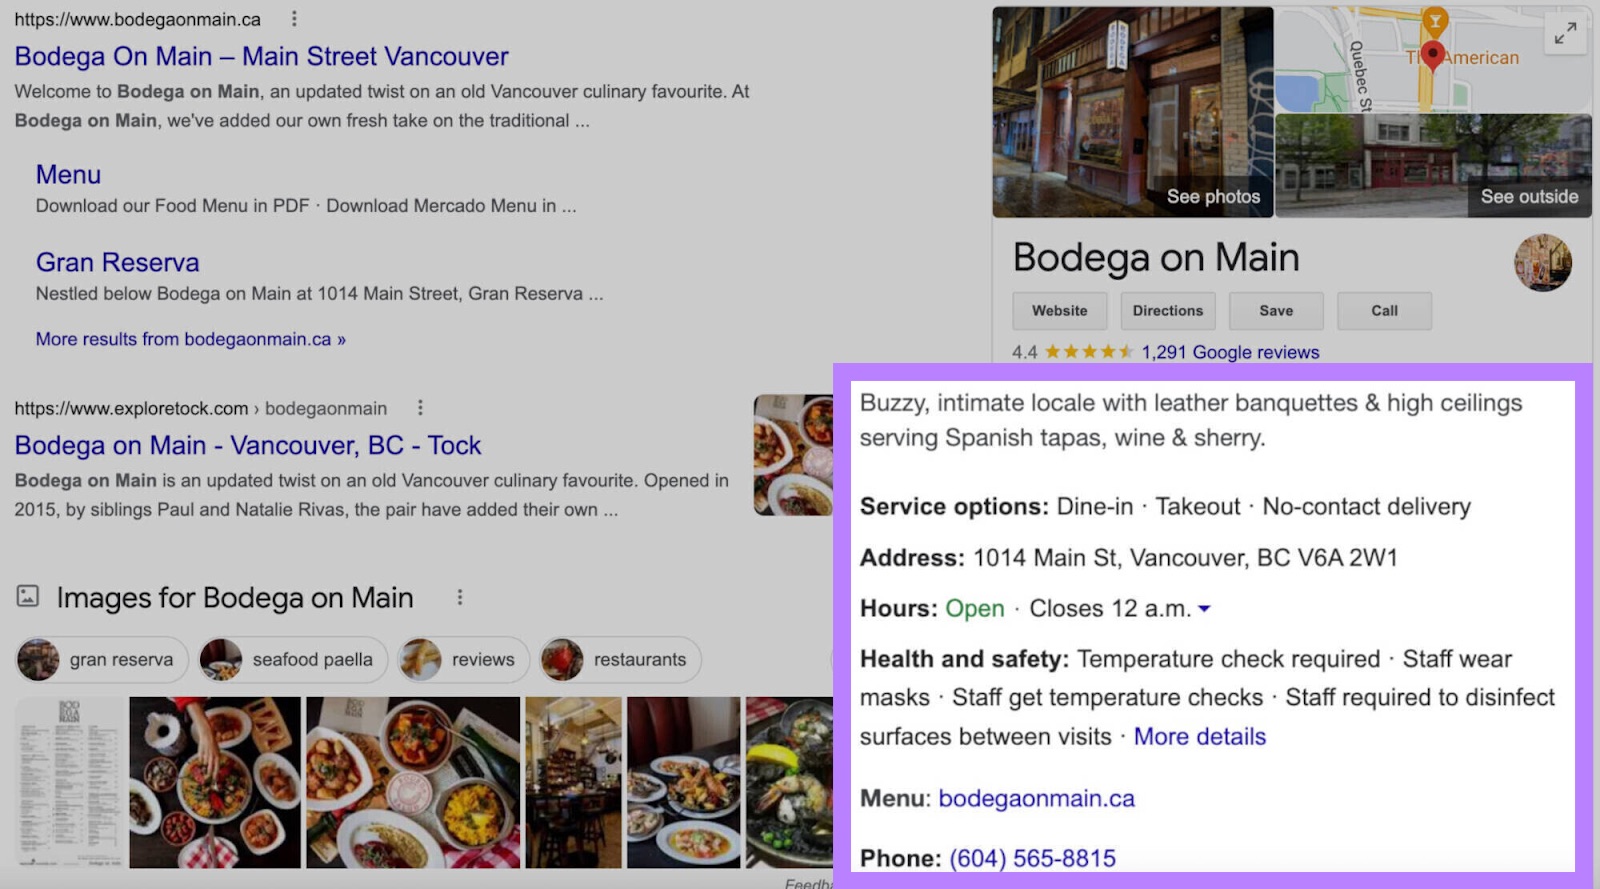 Bodega on Main profile on Google search